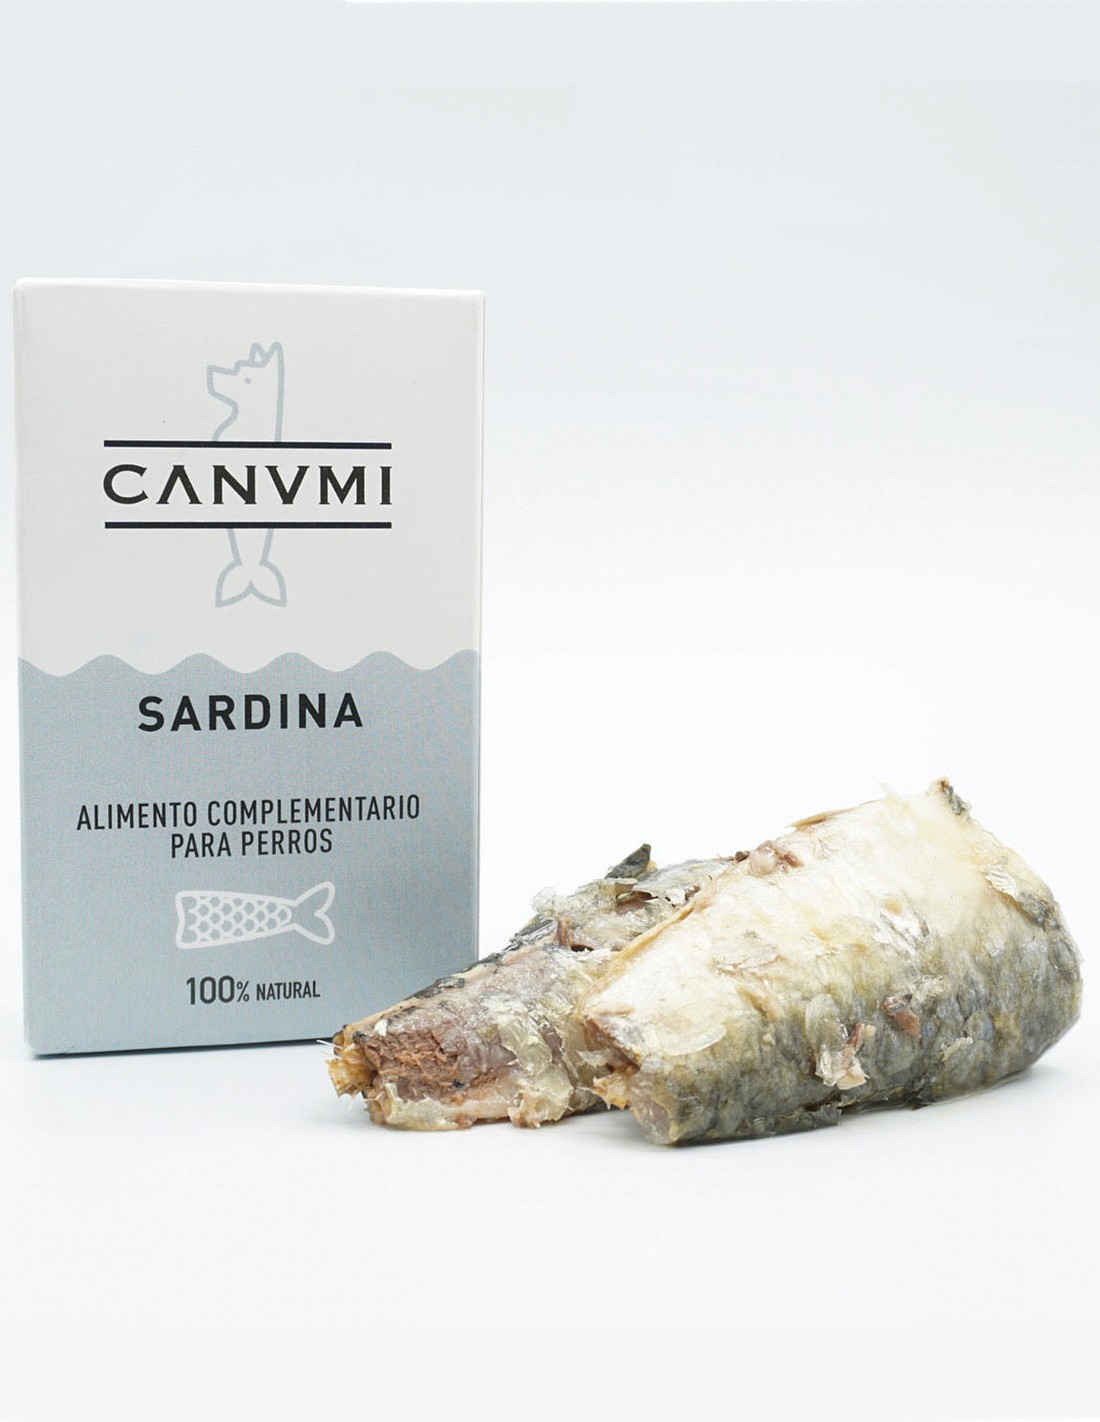 CANUMI Sardinas 125g - Snack Natural